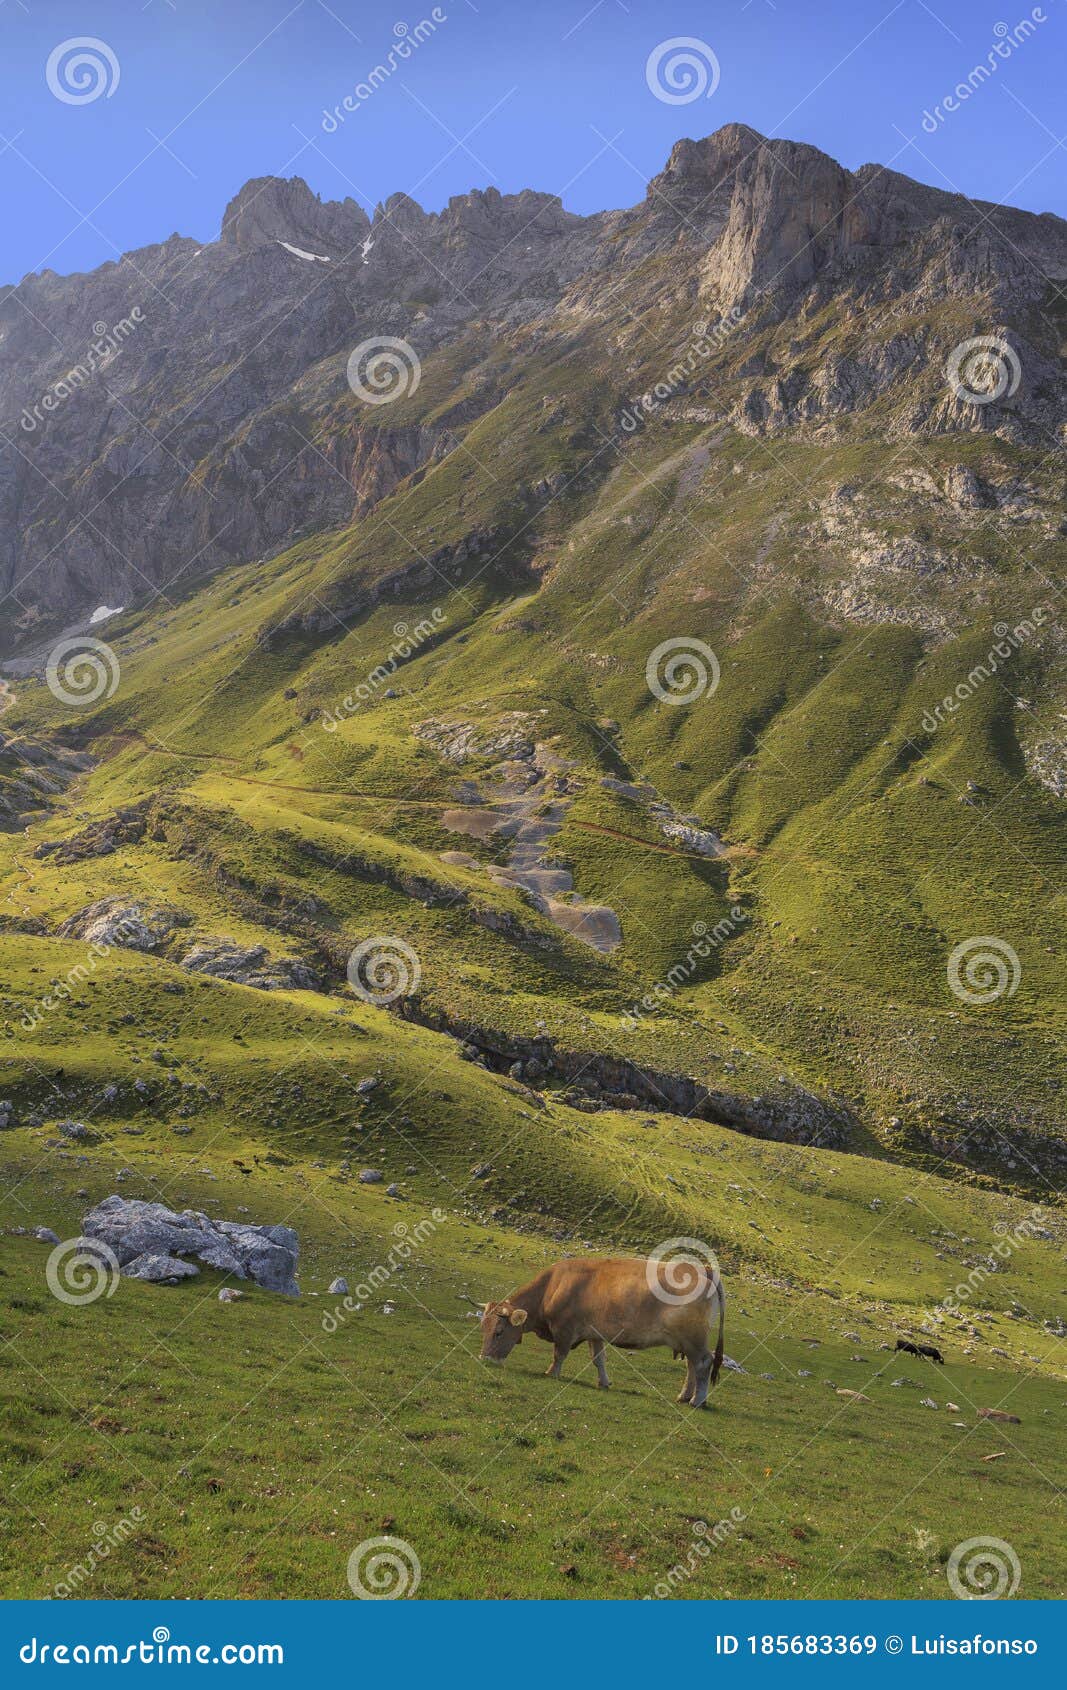 cows in picos de europa central peaks at aliva valley